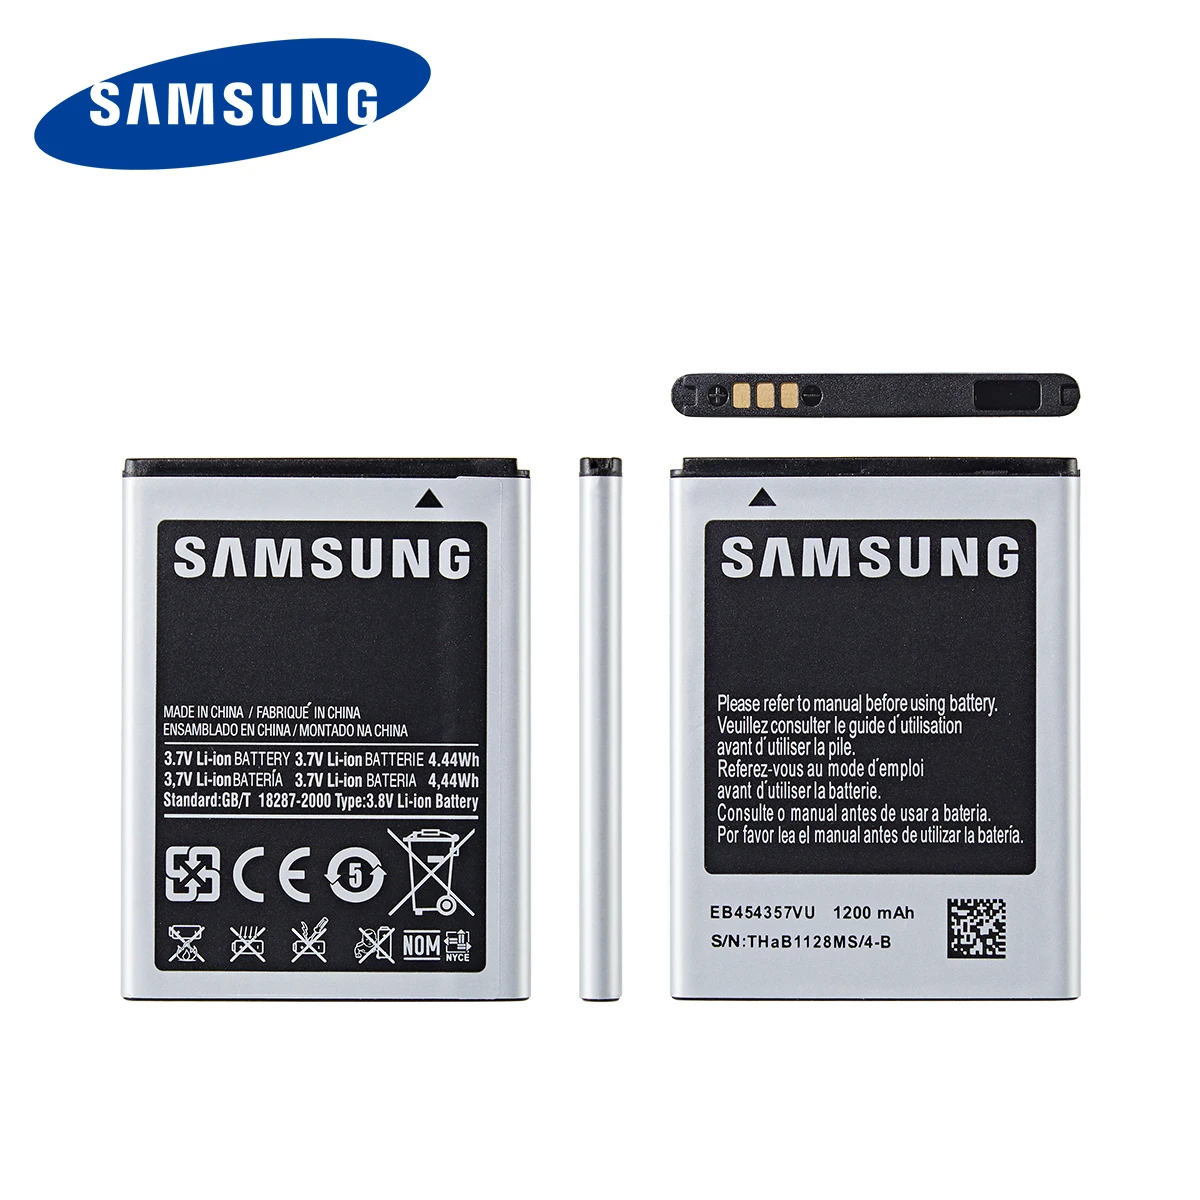 SAMSUNG Oriģinālā EB454357VU 1200mAh Akumulators Samsung Galaxy Y S5360 Y Pro B5510 S5380 Wave Kabatas S5300 Čats B5330